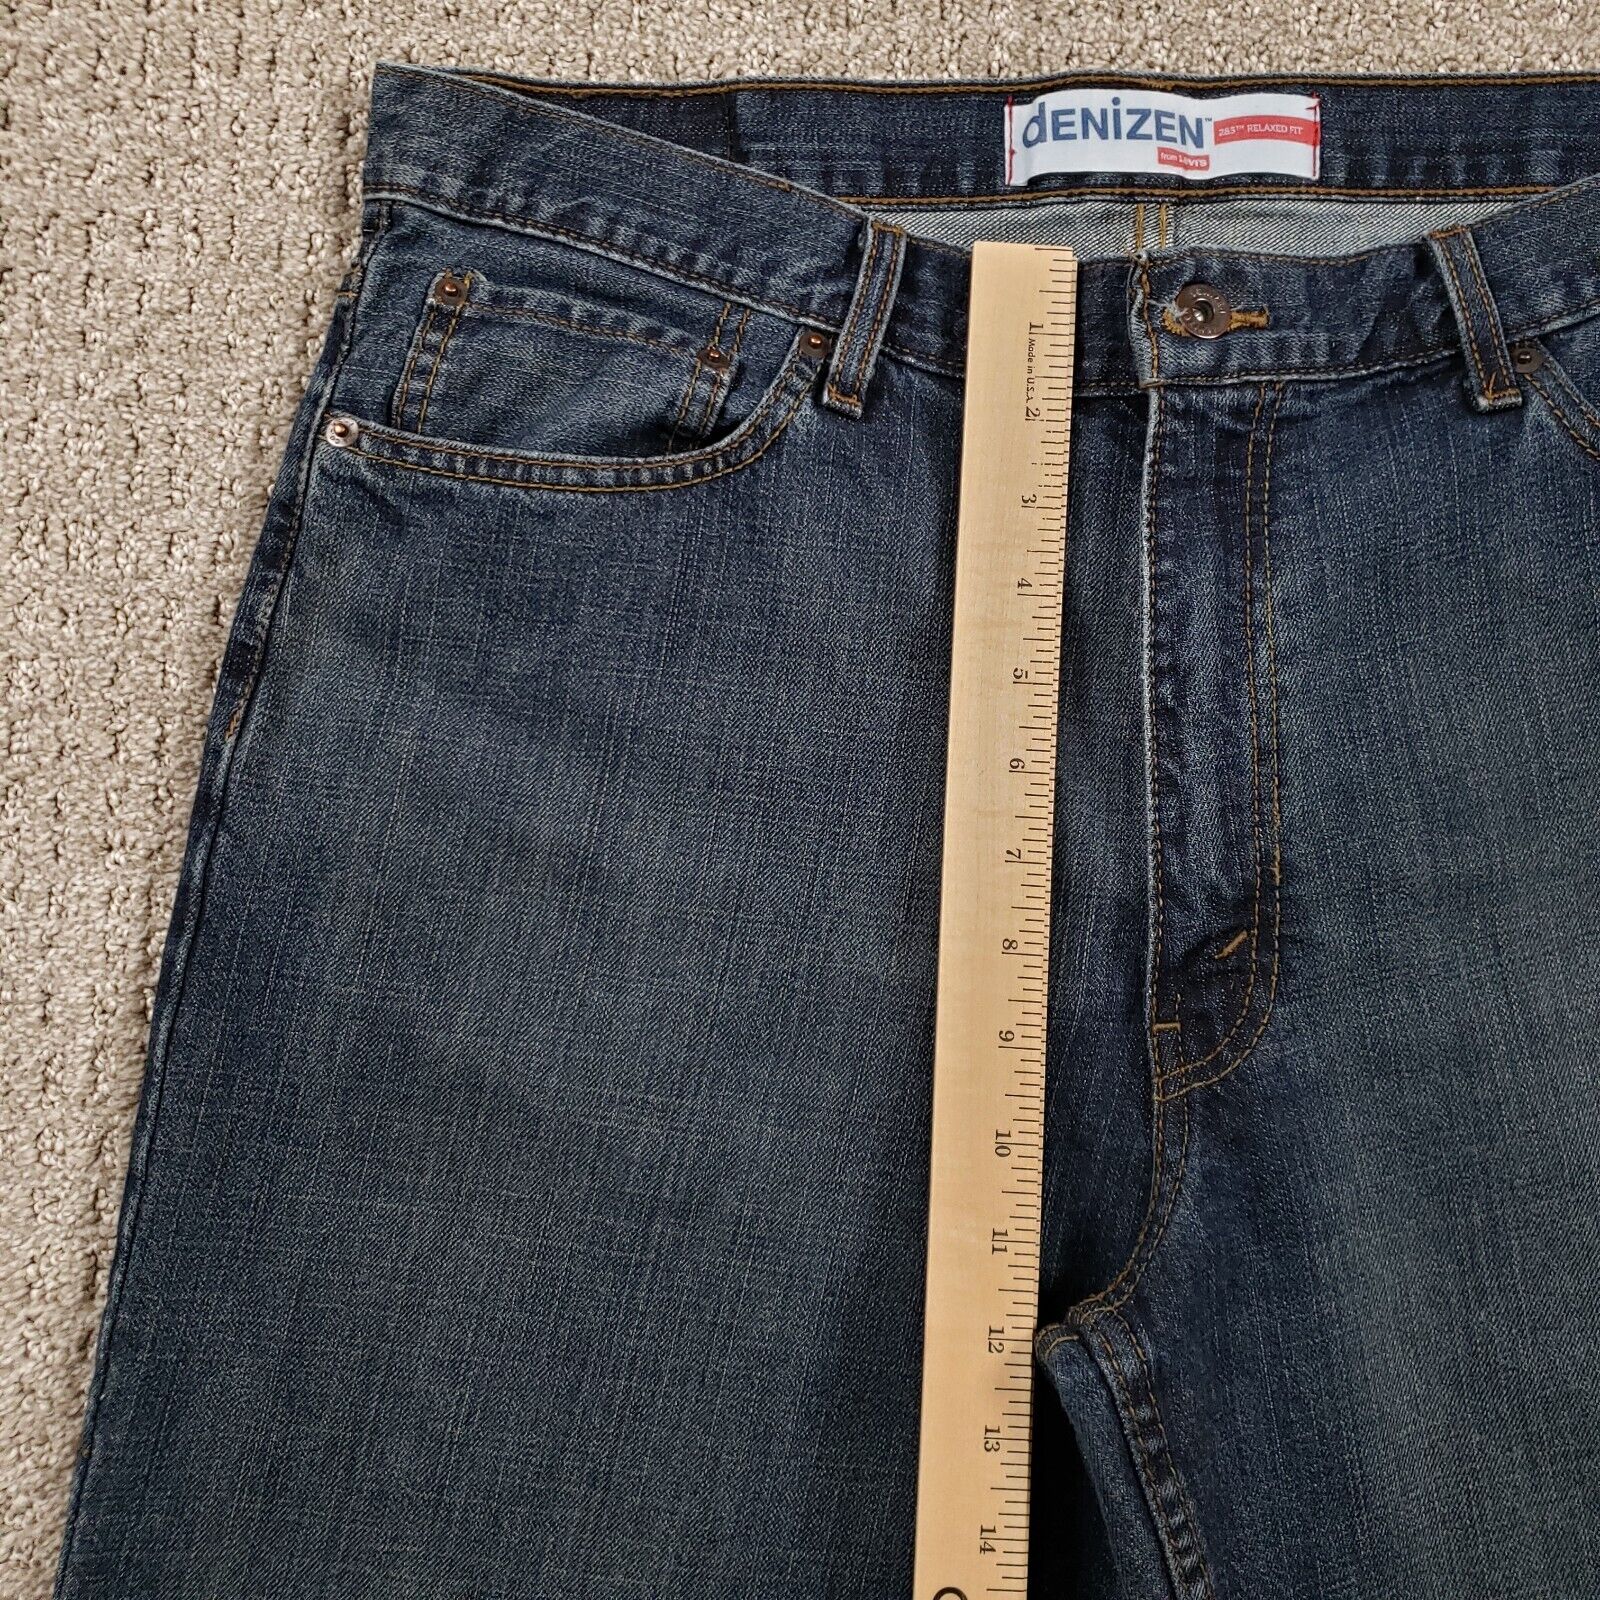 DENIZEN LEVIS Jeans Mens 36x30 285 Relaxed Fit De… - image 8